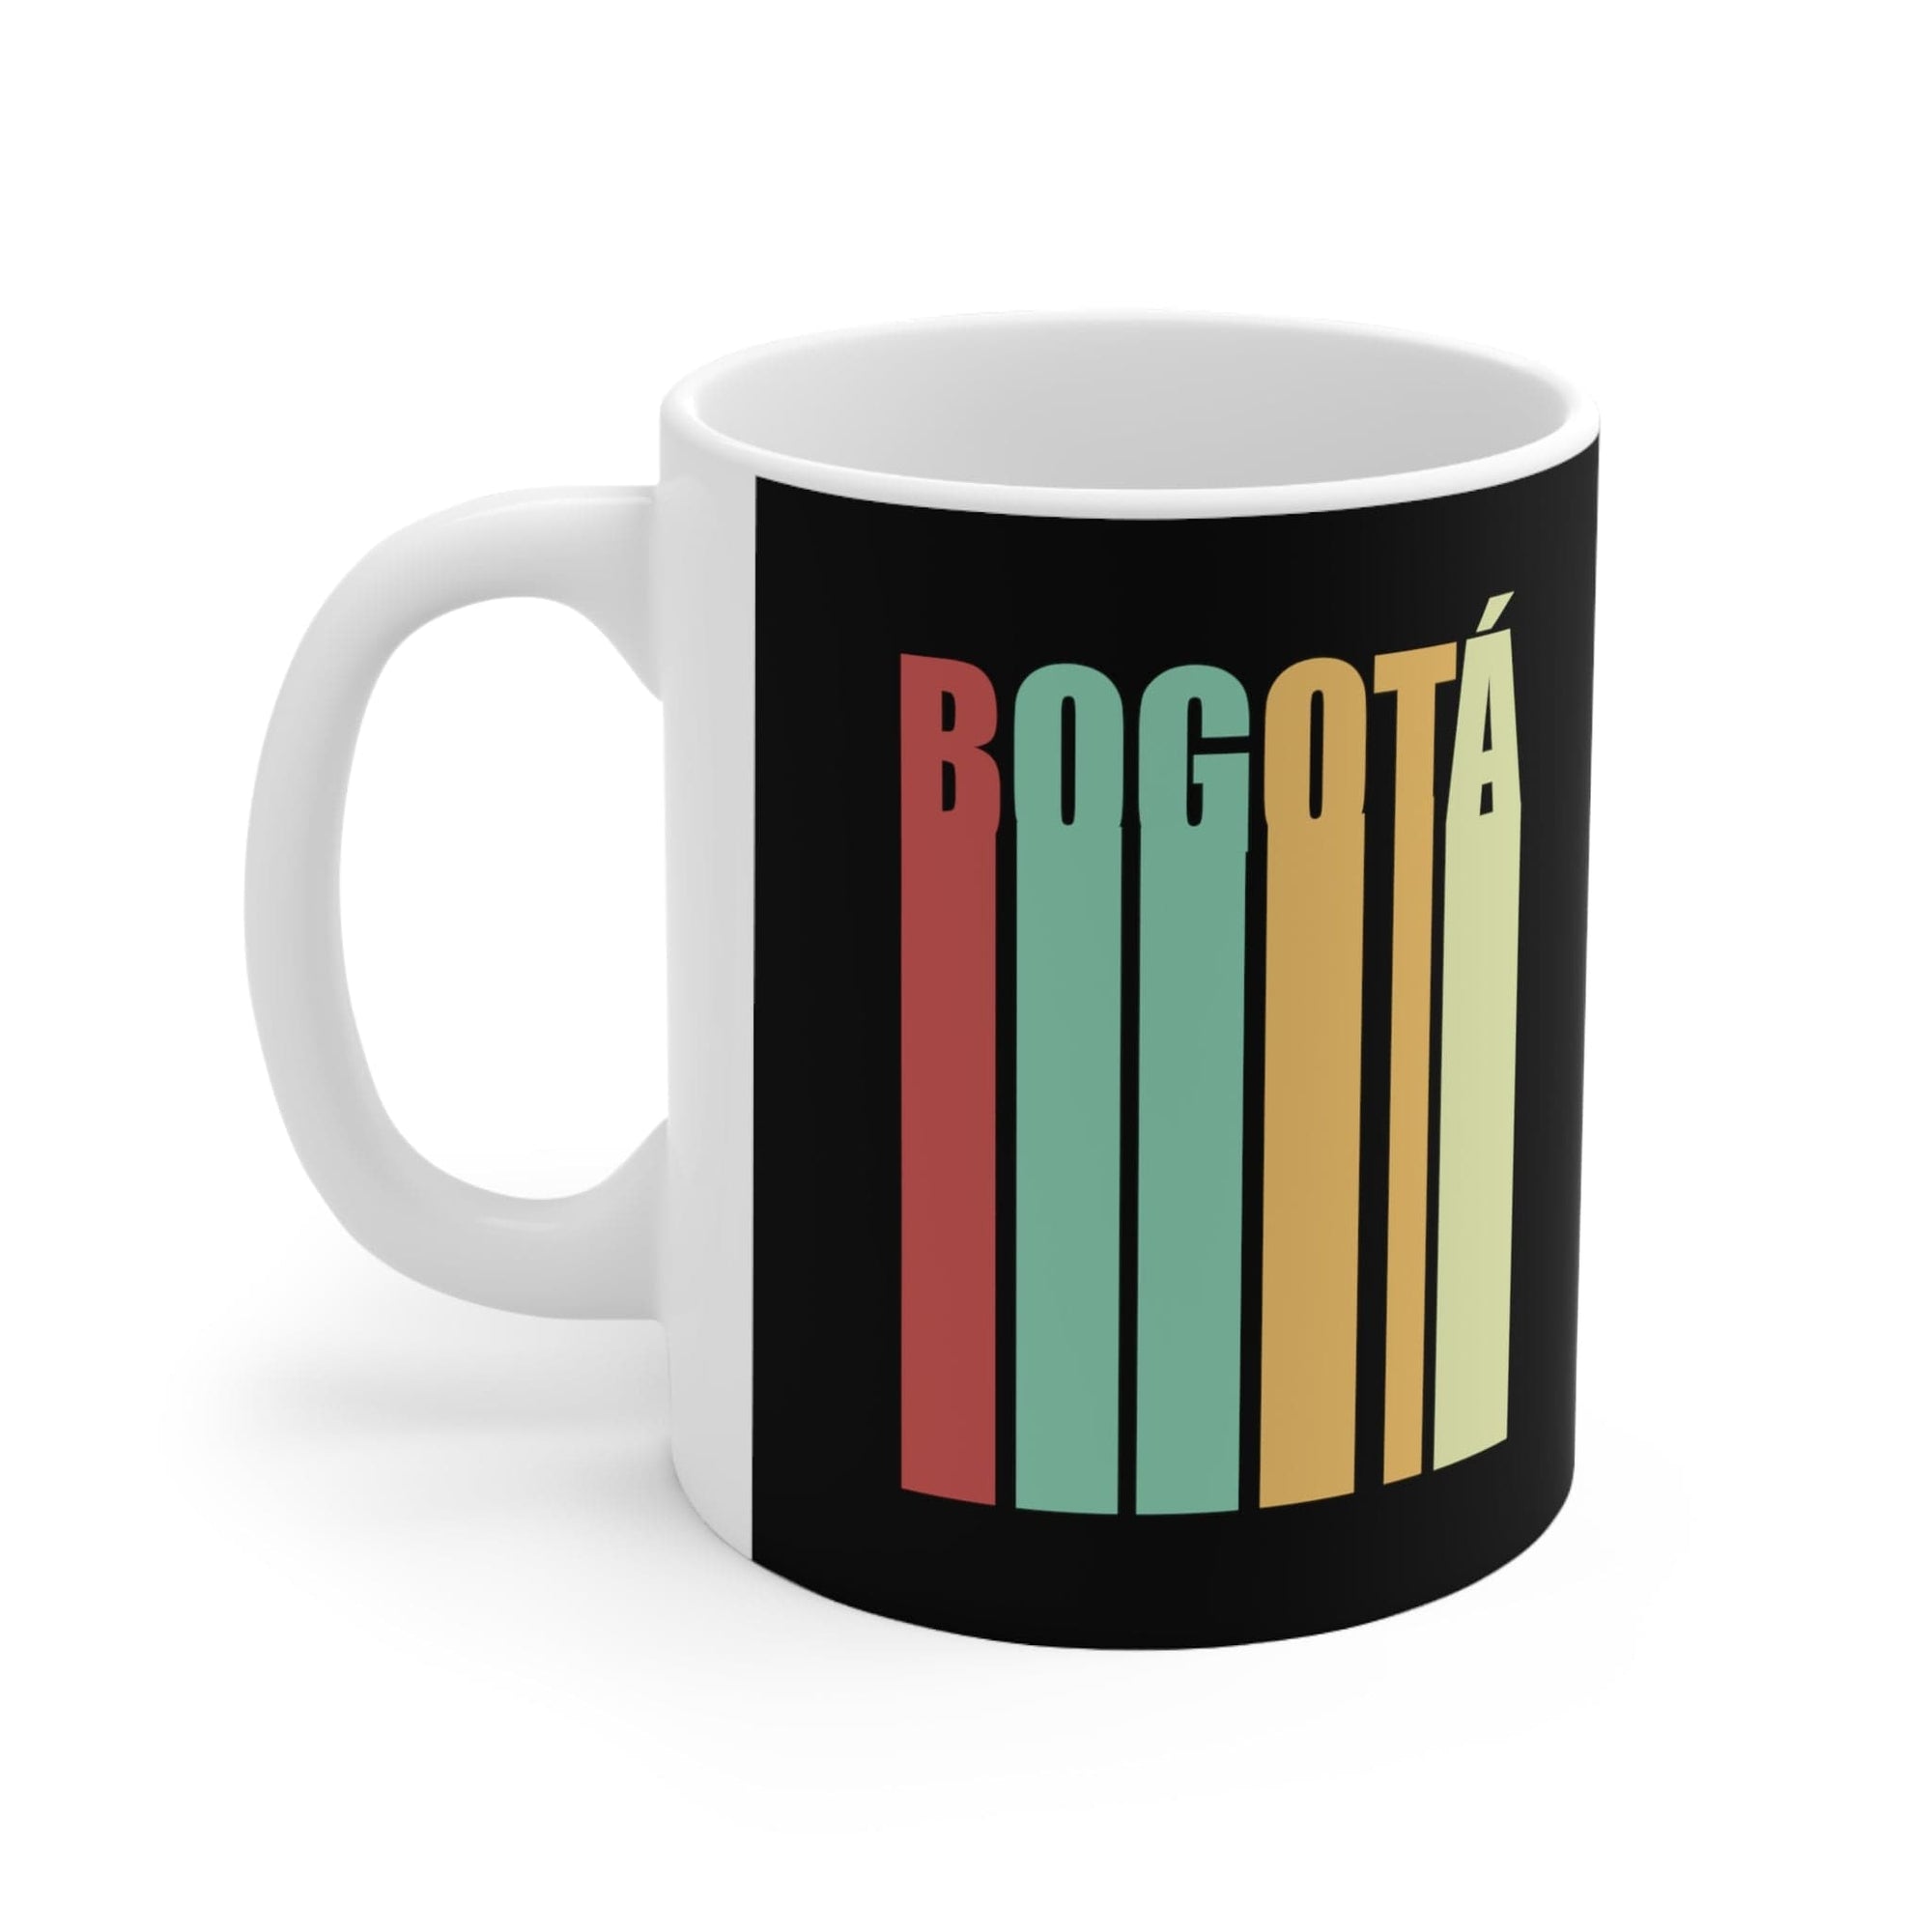 BOGOTA - Awesome Ceramic Mug, Exclusive Design